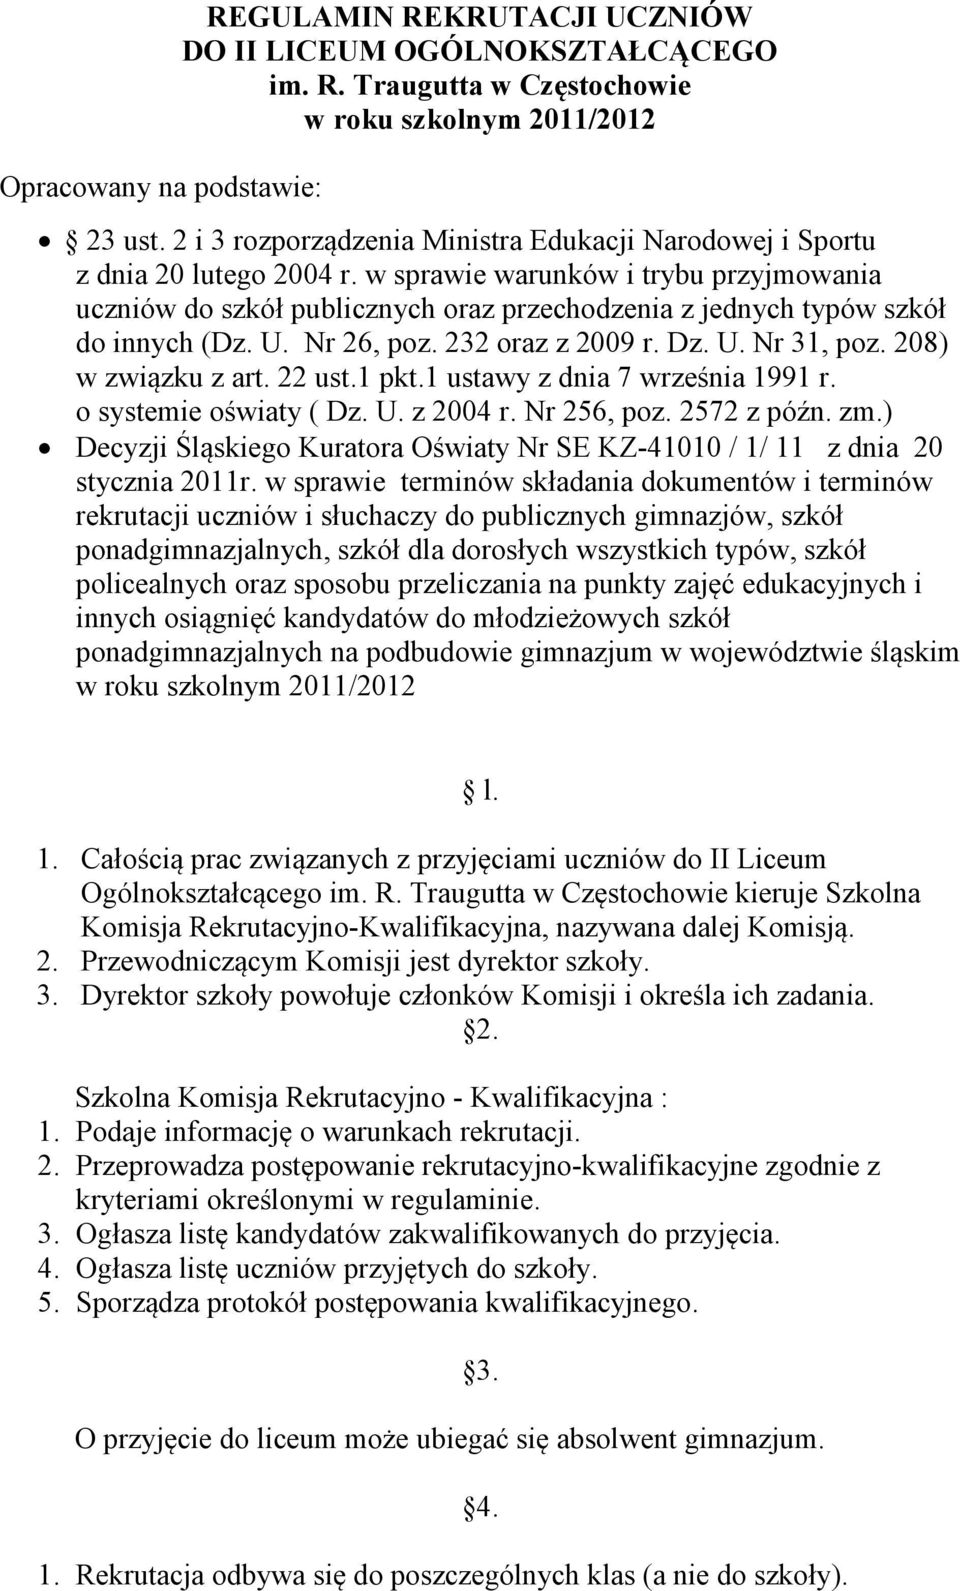 w sprawie warunków i trybu przyjmowania uczniów do szkół publicznych oraz przechodzenia z jednych typów szkół do innych (Dz. U. Nr 26, poz. 232 oraz z 2009 r. Dz. U. Nr 31, poz. 208) w związku z art.